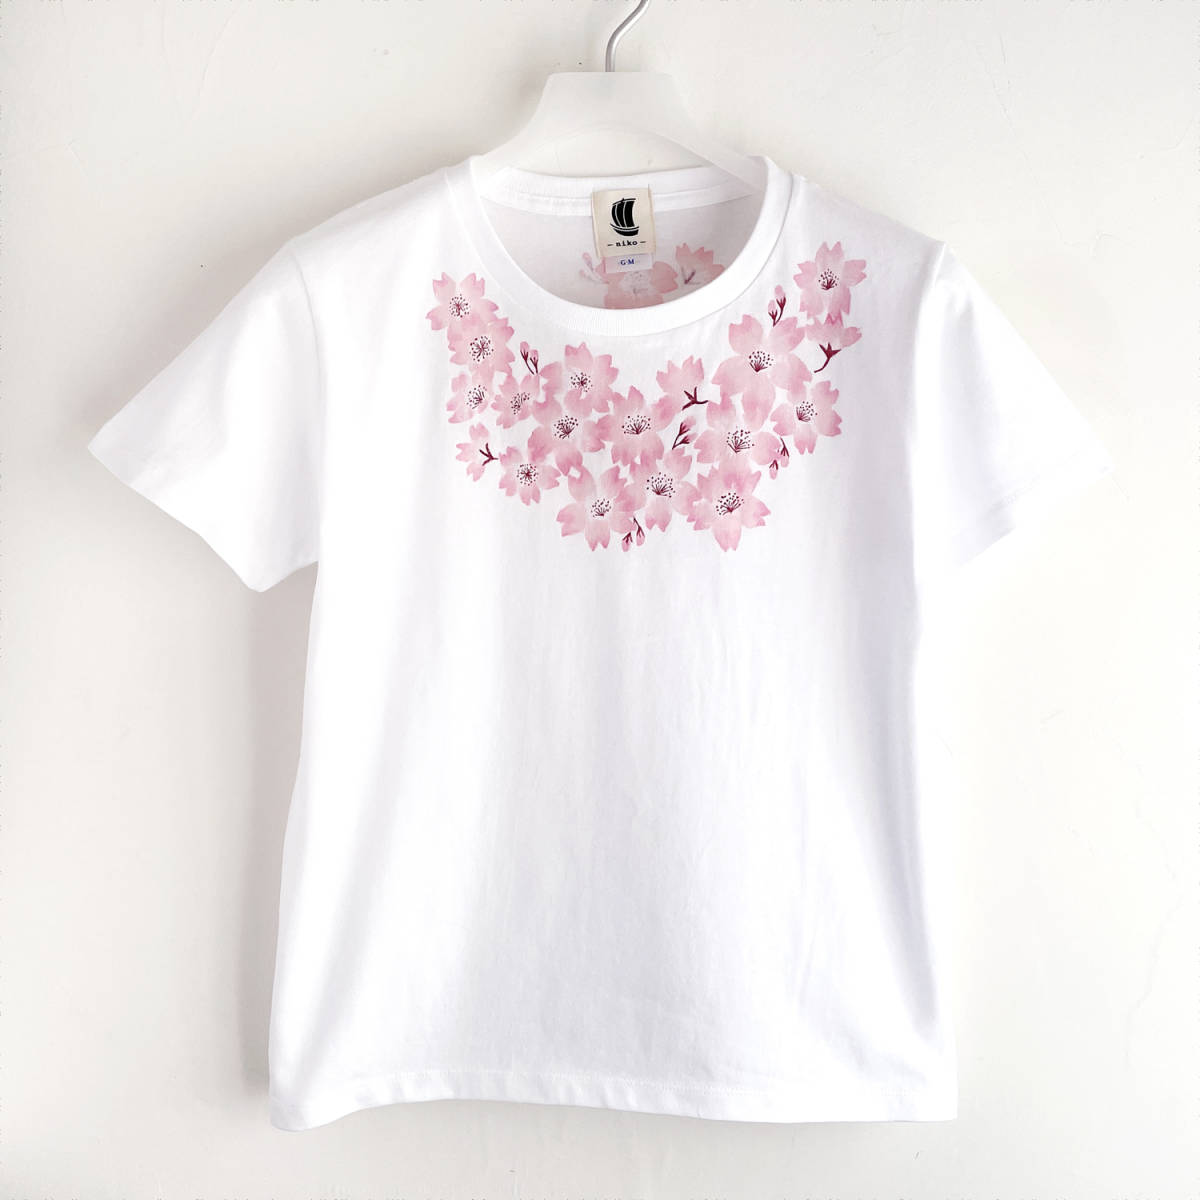 여성용 티셔츠, M 사이즈, 하얀색, 코사지 벚꽃 플로럴 티셔츠, 핸드페인팅 티셔츠, 중간 사이즈, 크루 넥, 무늬가 있는